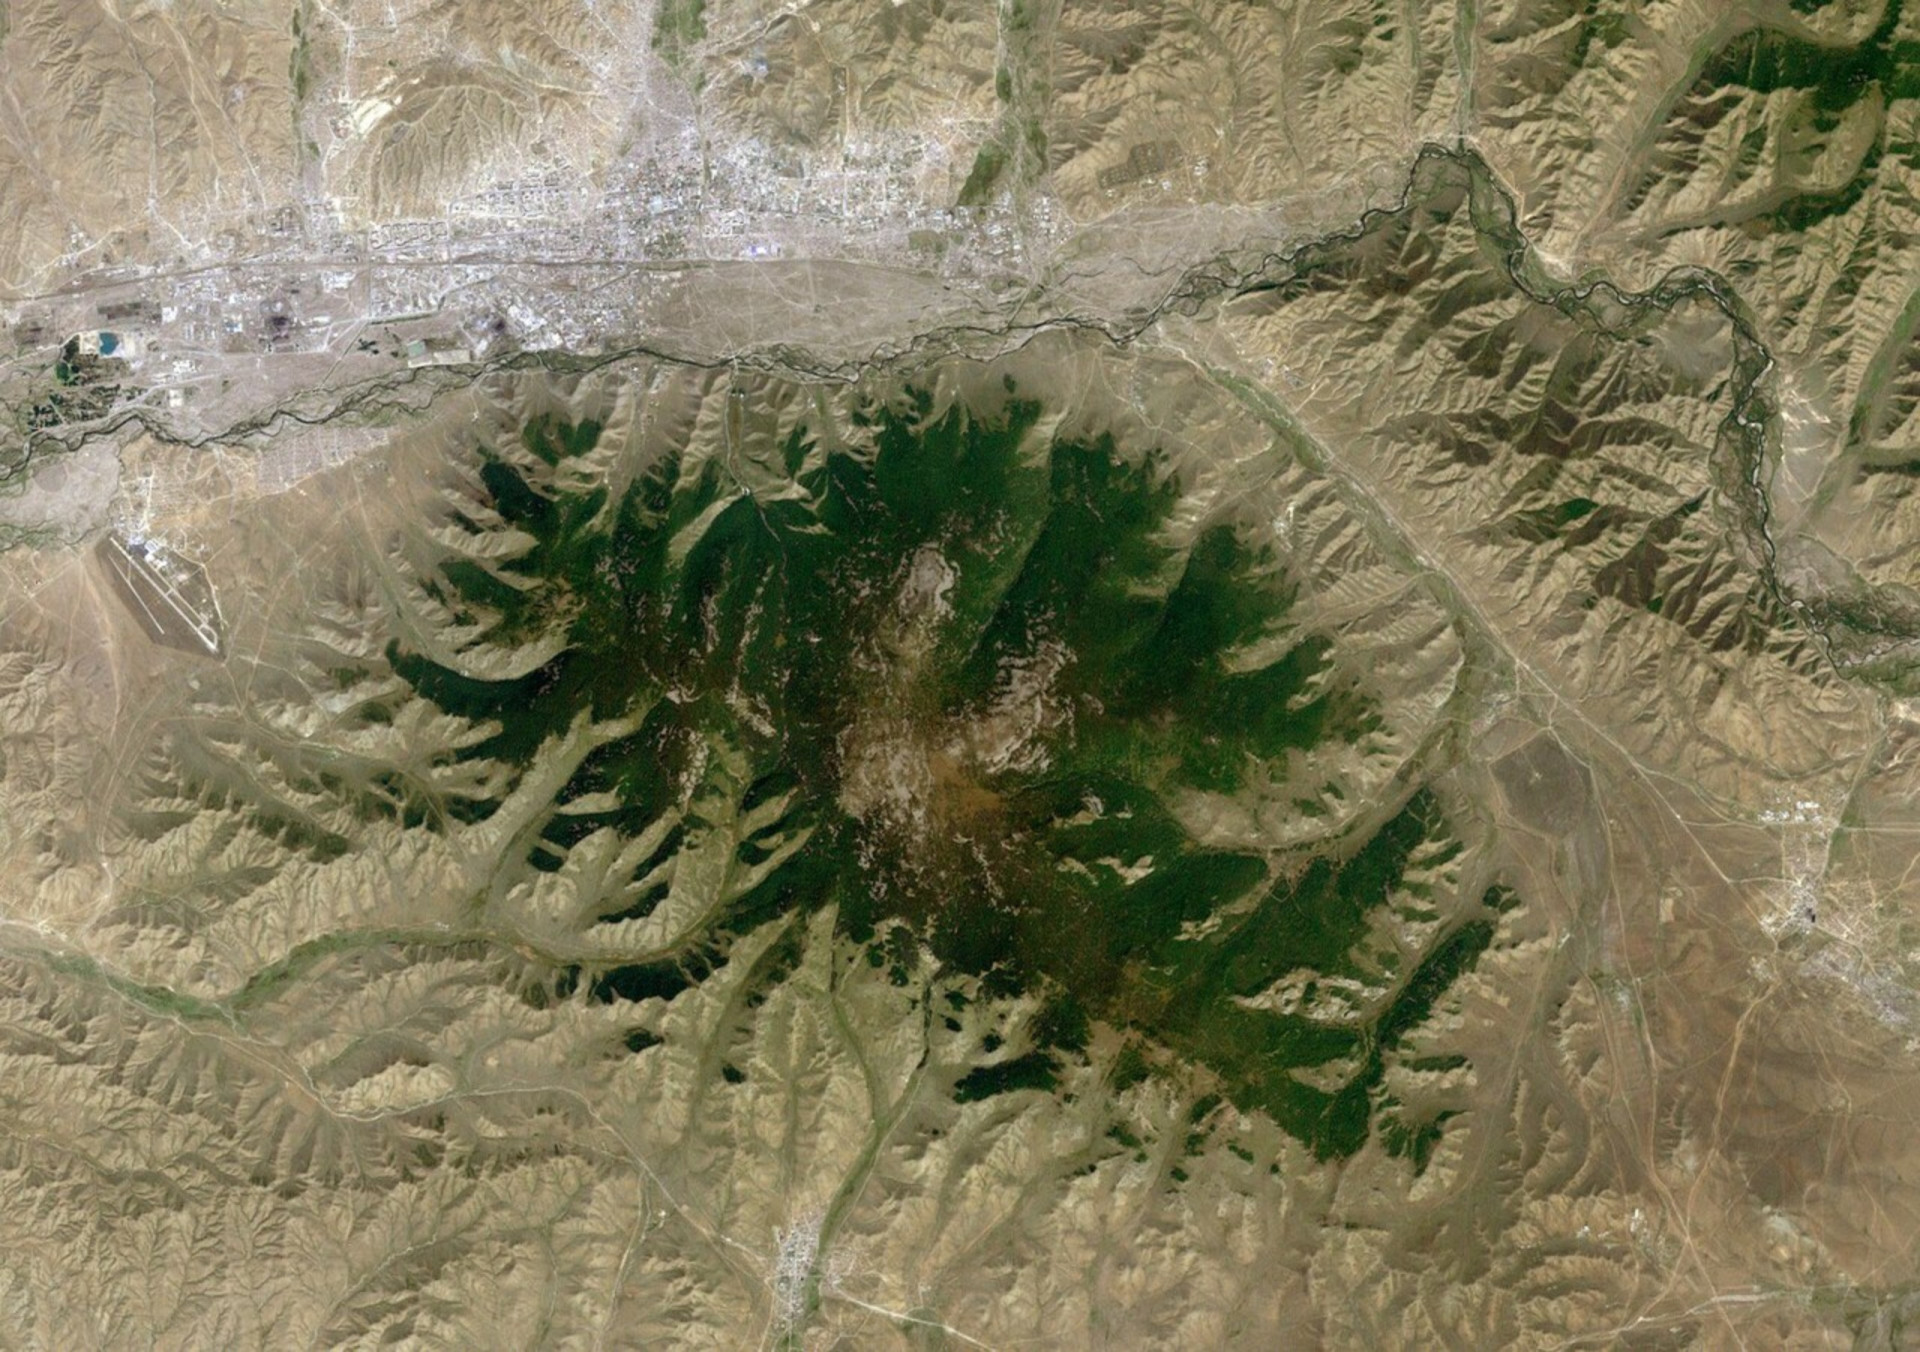 <p>La réserve de biosphère de Bogd Khan Uul, en Mongolie, est le plus ancien parc national du monde. Il a été créé en 1778, soit 94 ans avant la création du parc national de Yellowstone aux États-Unis, qui est souvent considéré à tort comme le premier du genre (bien qu'il s'agisse du plus ancien parc national des États-Unis). Voici une image satellite de la montagne Bogd Khan (au centre) et d'Oulan-Bator, la capitale, en haut à gauche.</p><p><a href="https://www.msn.com/fr-ca/community/channel/vid-7xx8mnucu55yw63we9va2gwr7uihbxwc68fxqp25x6tg4ftibpra?cvid=94631541bc0f4f89bfd59158d696ad7e">Suivez-nous et accédez tous les jours à du contenu exclusif</a></p>